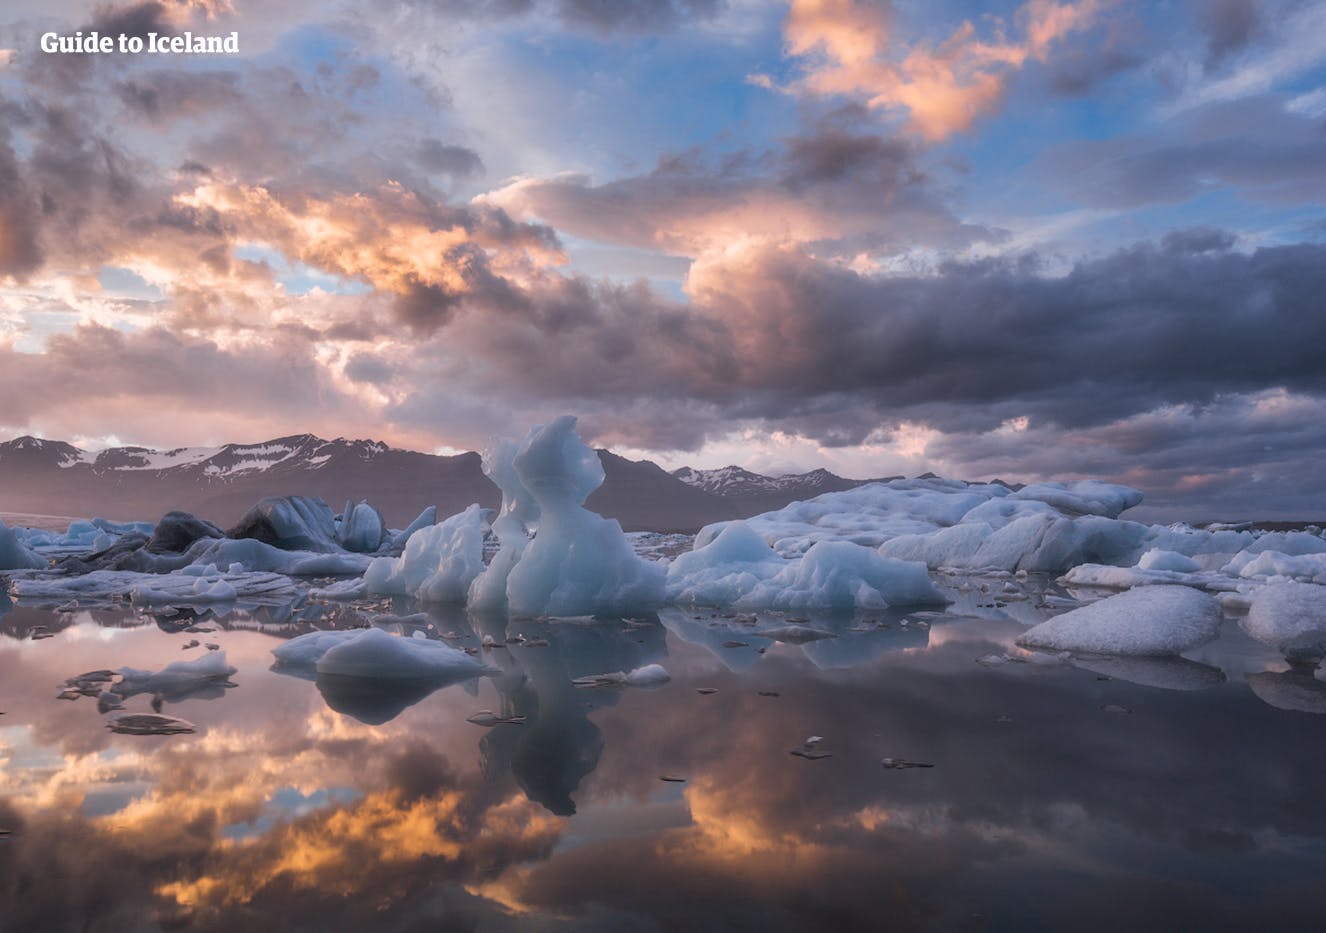 La laguna glaciar de Jökulsárlón se la conoce como 'la joya de la corona' de Islandia gracias a su sublime y estética belleza.